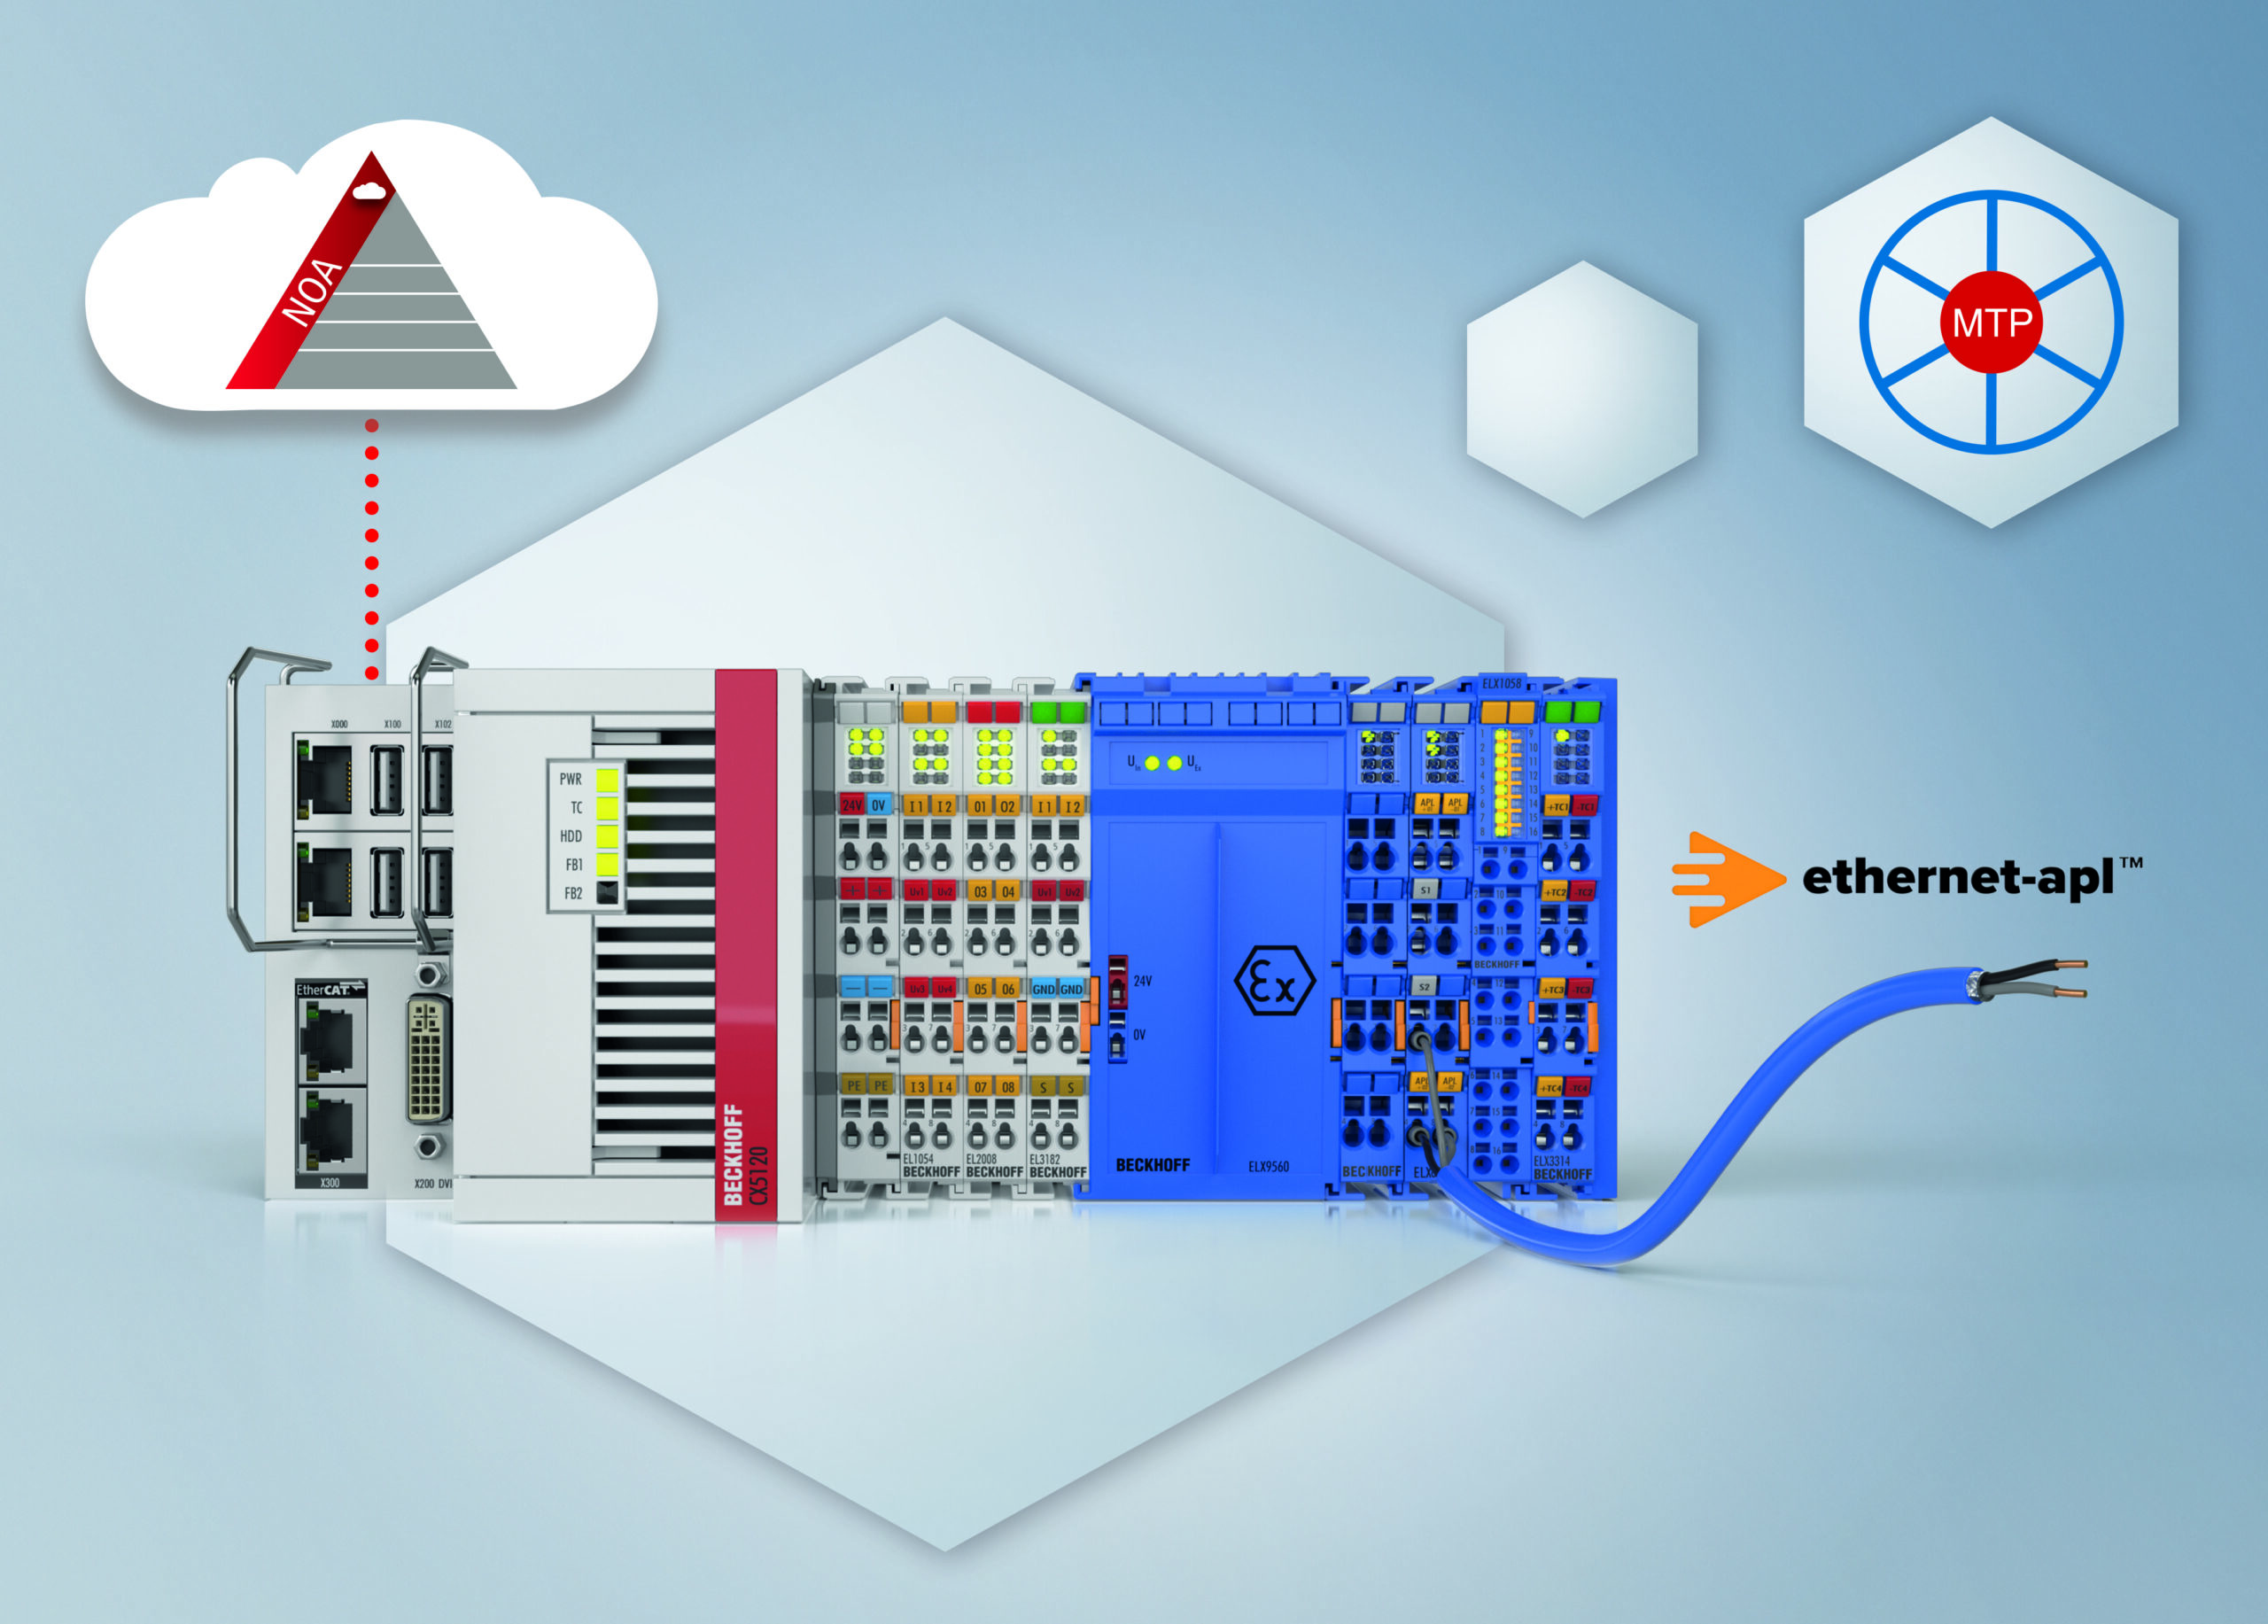 Anlagenautomatisierung mit NOA, Ethernet-APL und MTP